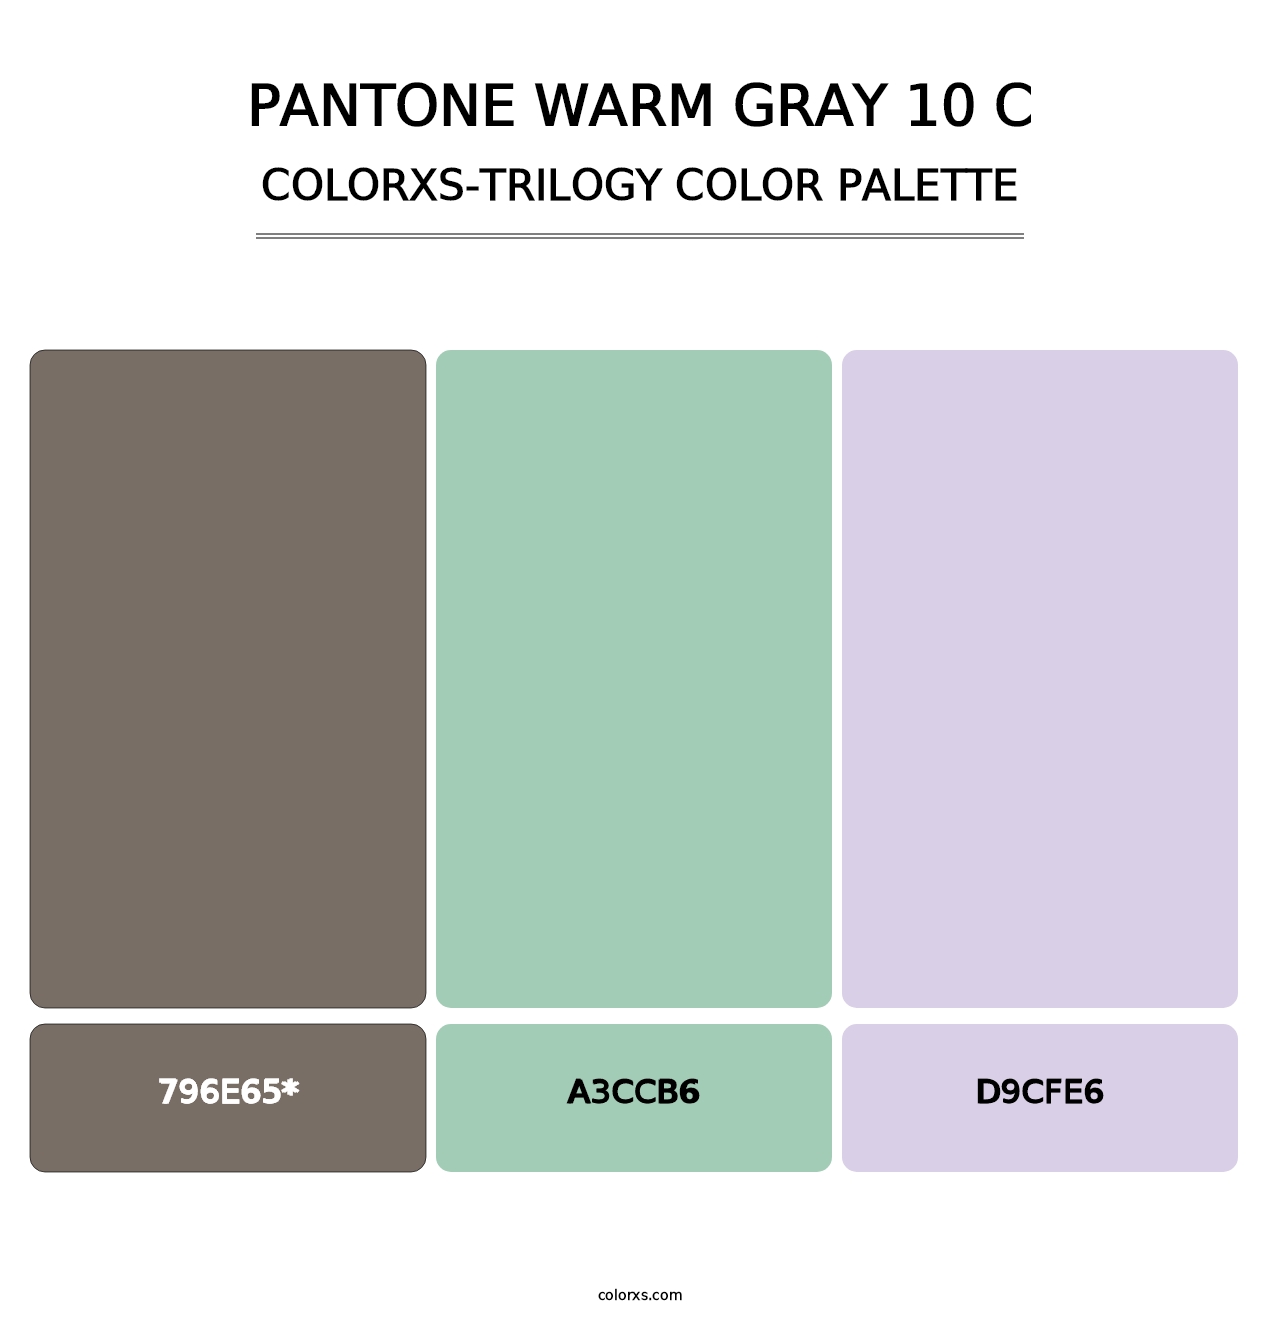 PANTONE Warm Gray 10 C - Colorxs Trilogy Palette